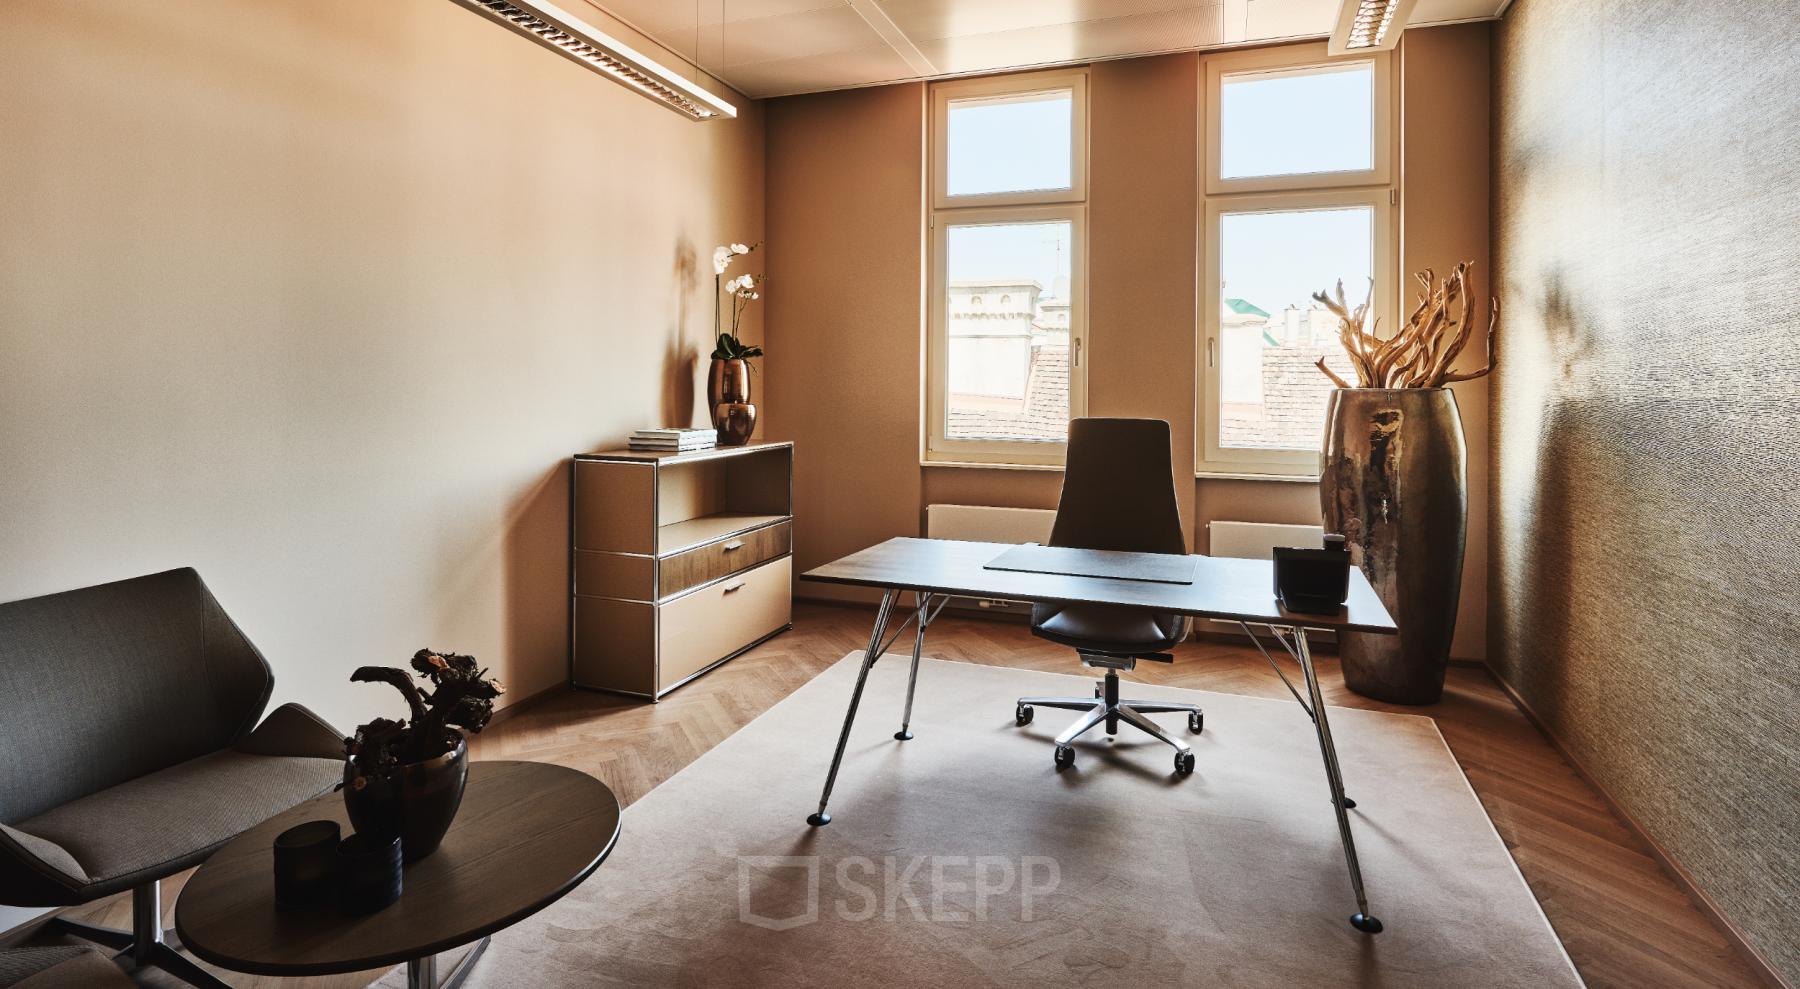 Rent office space Tuchlauben 7a, Wien (3)